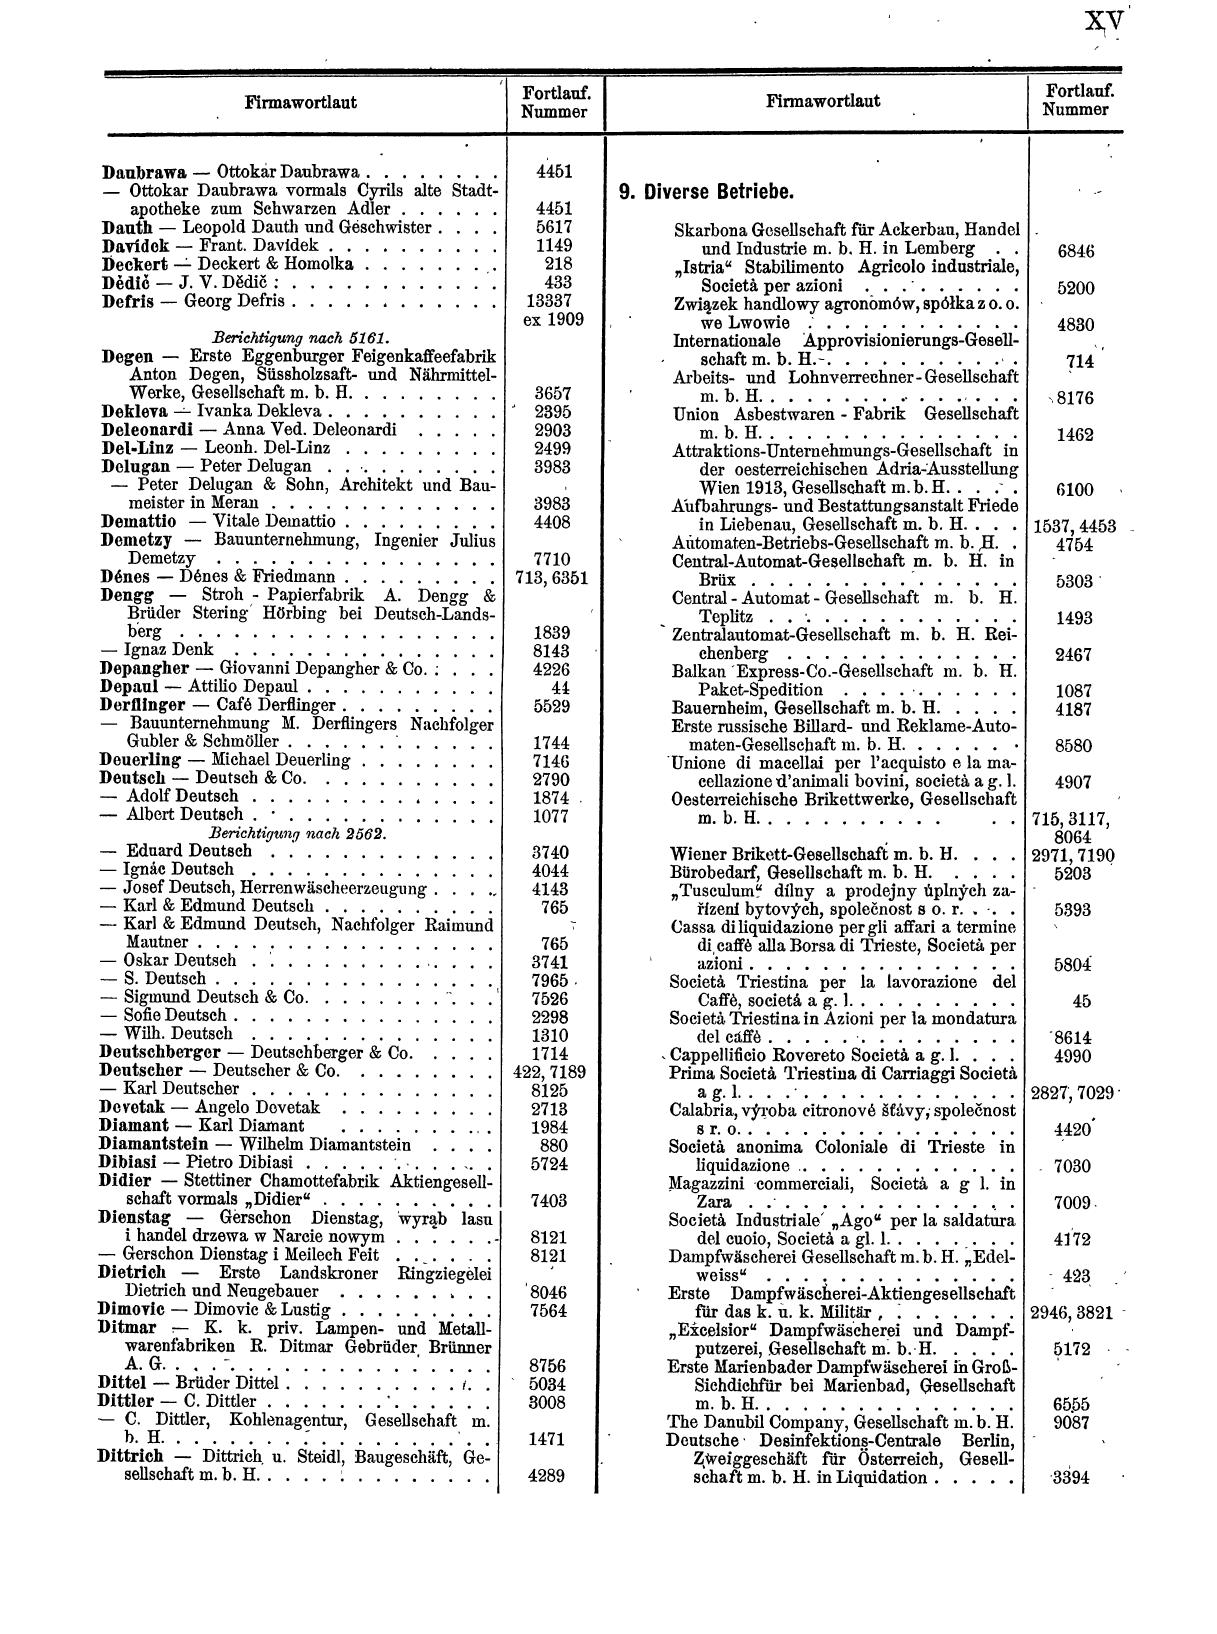 Zentralblatt für die Eintragungen in das Handelsregister 1913, Teil 1 - Seite 23